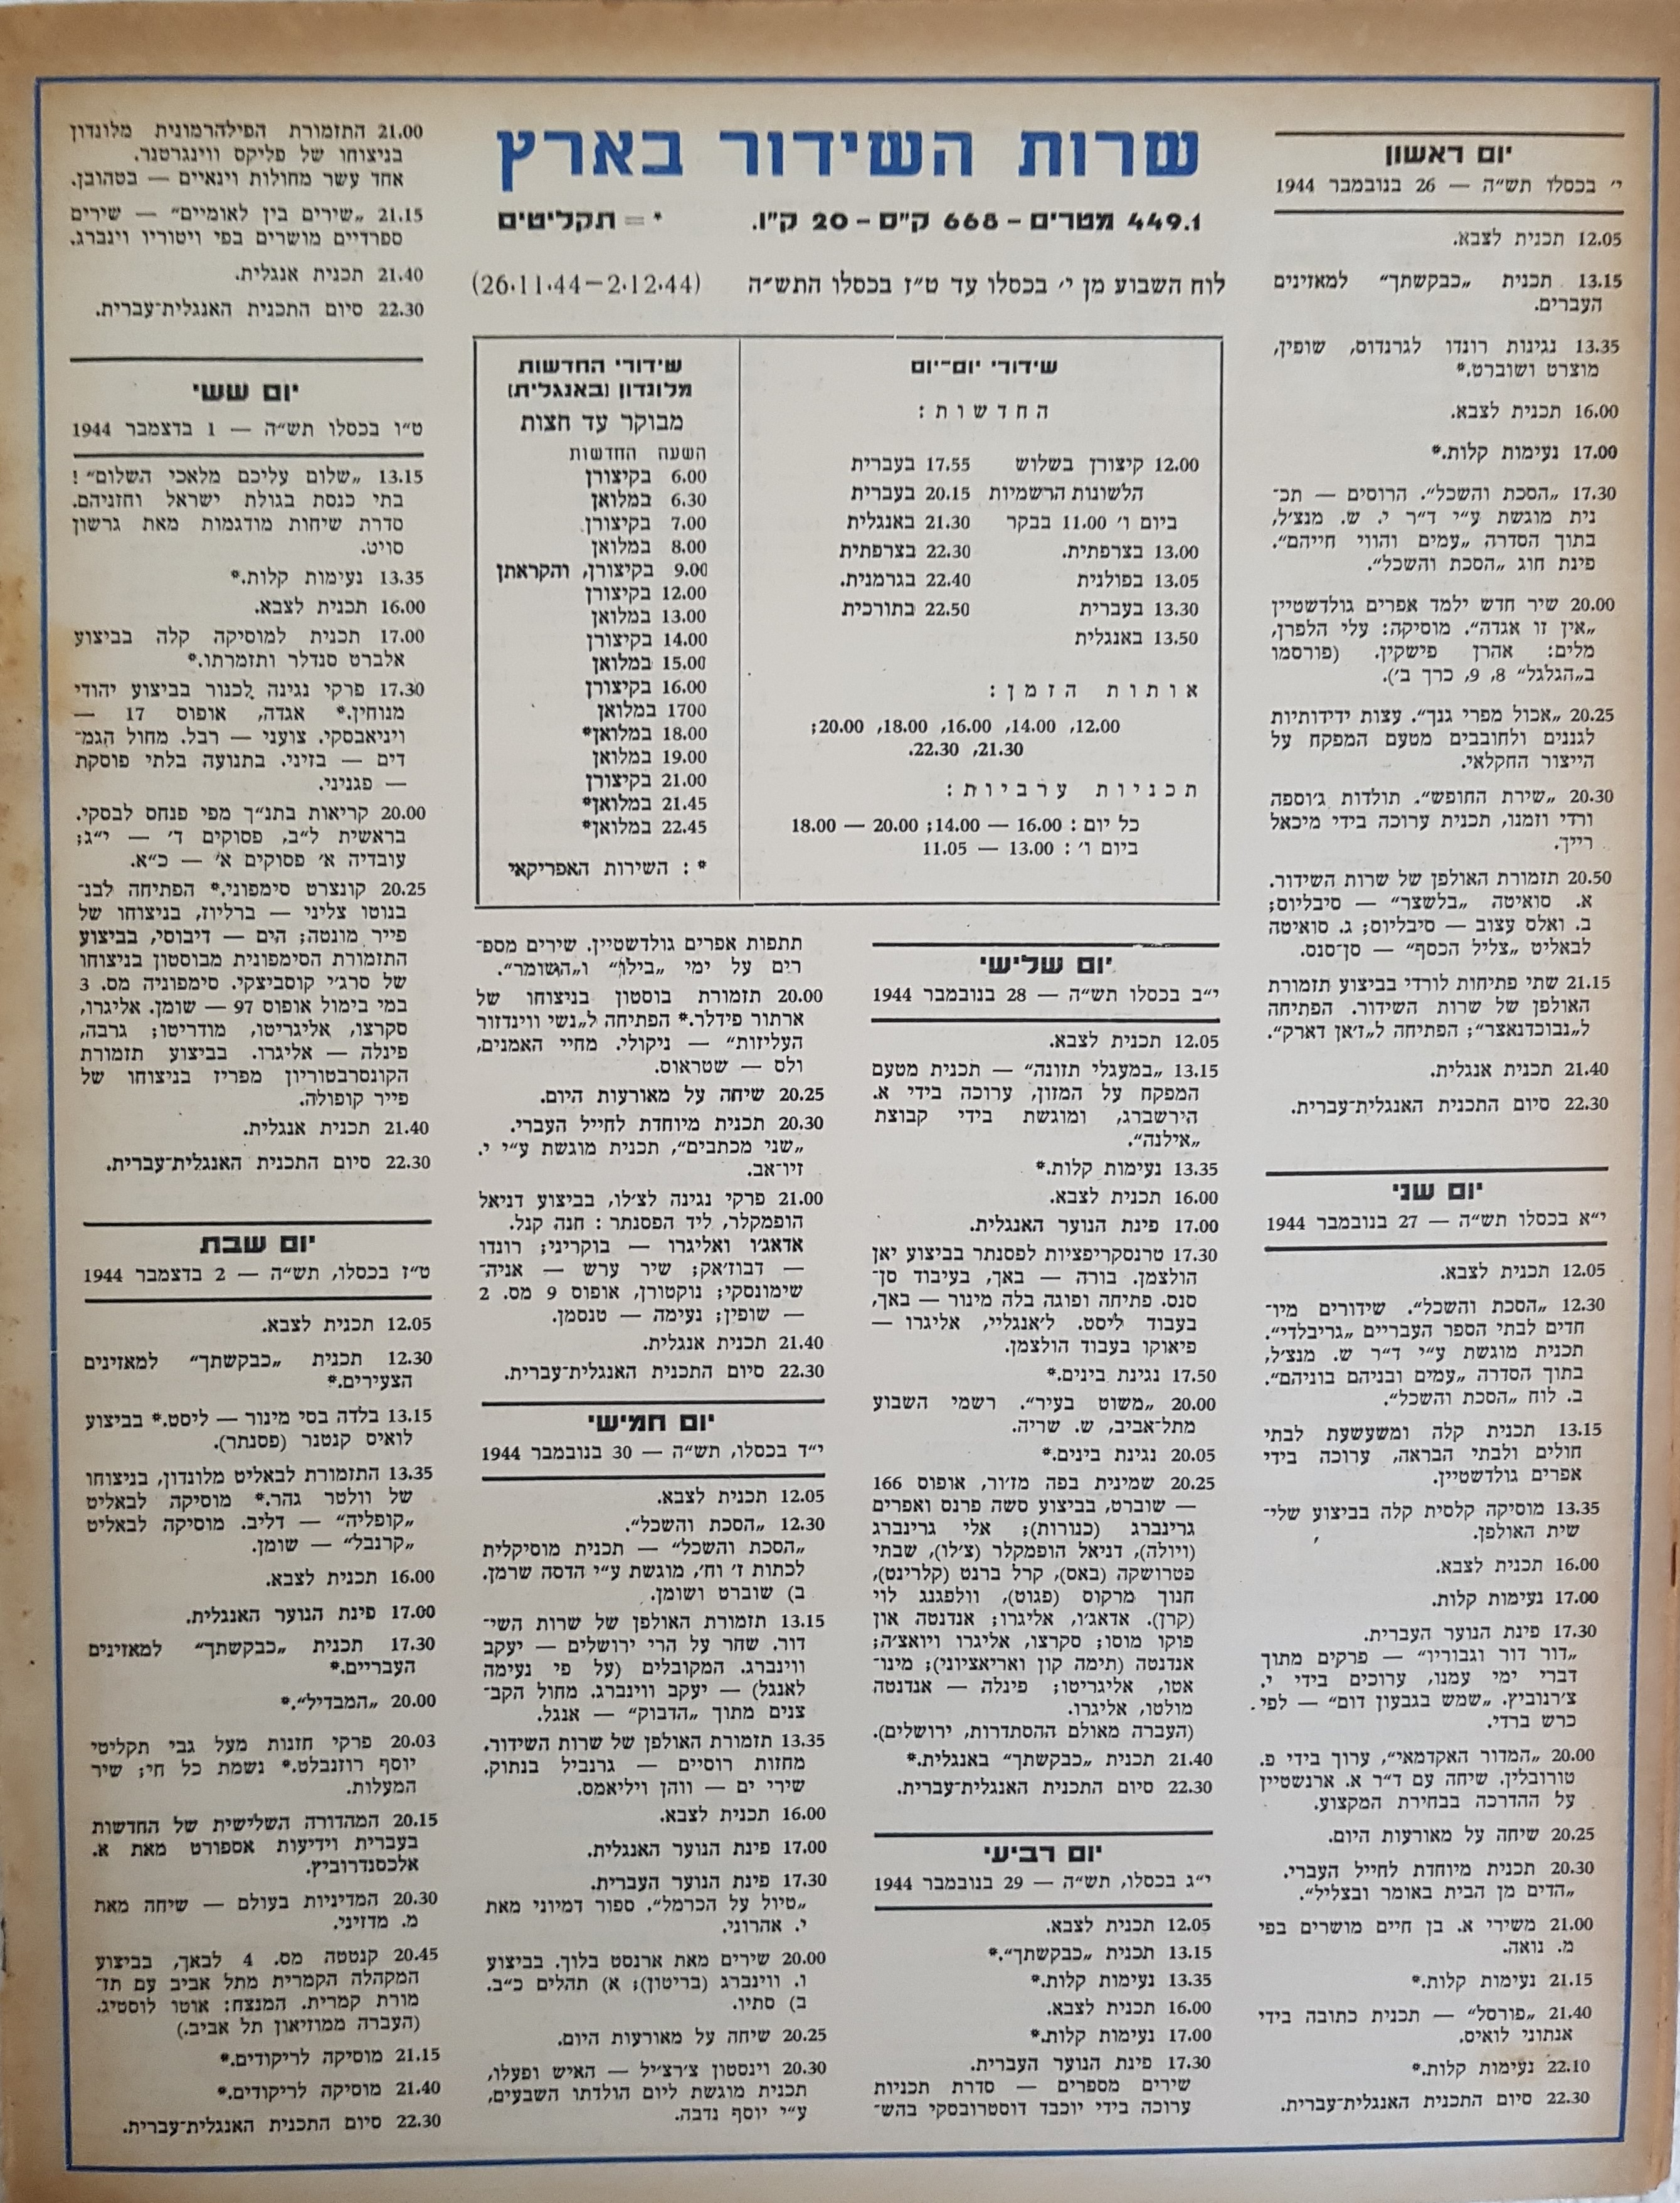 Radio Schedule: November 26 - December 2, 1944 